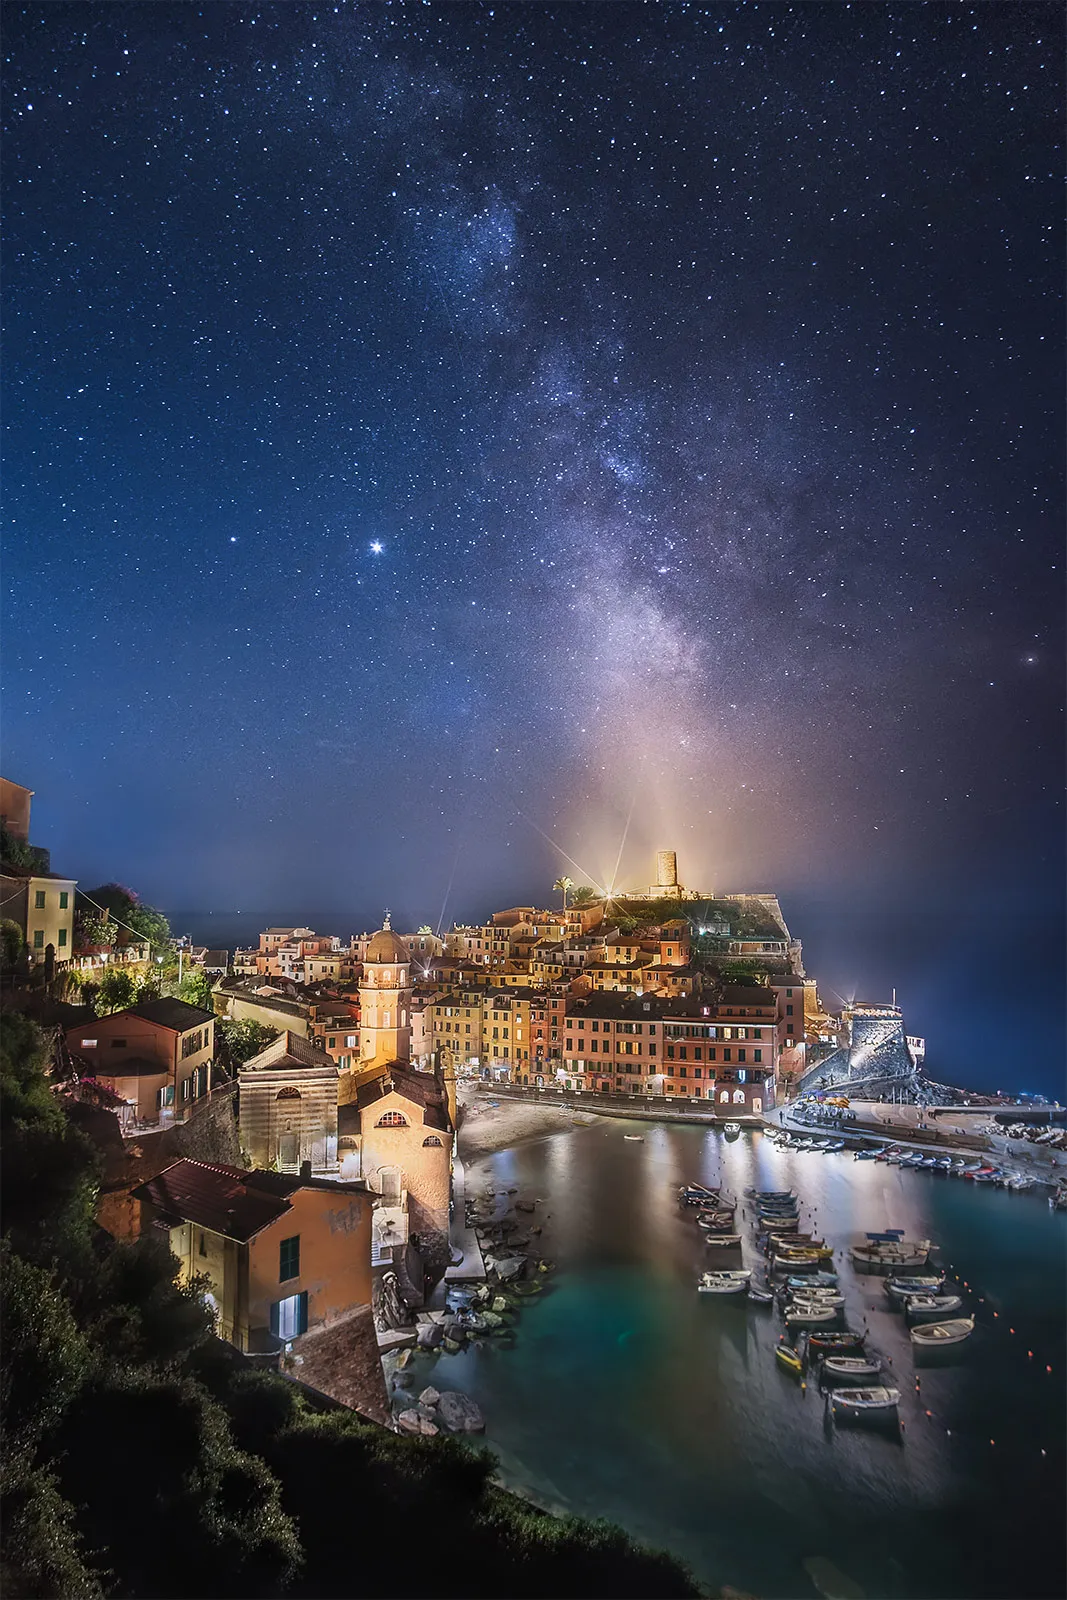 Milky Way rising above Vernazza, Cinque Terre in Italy.